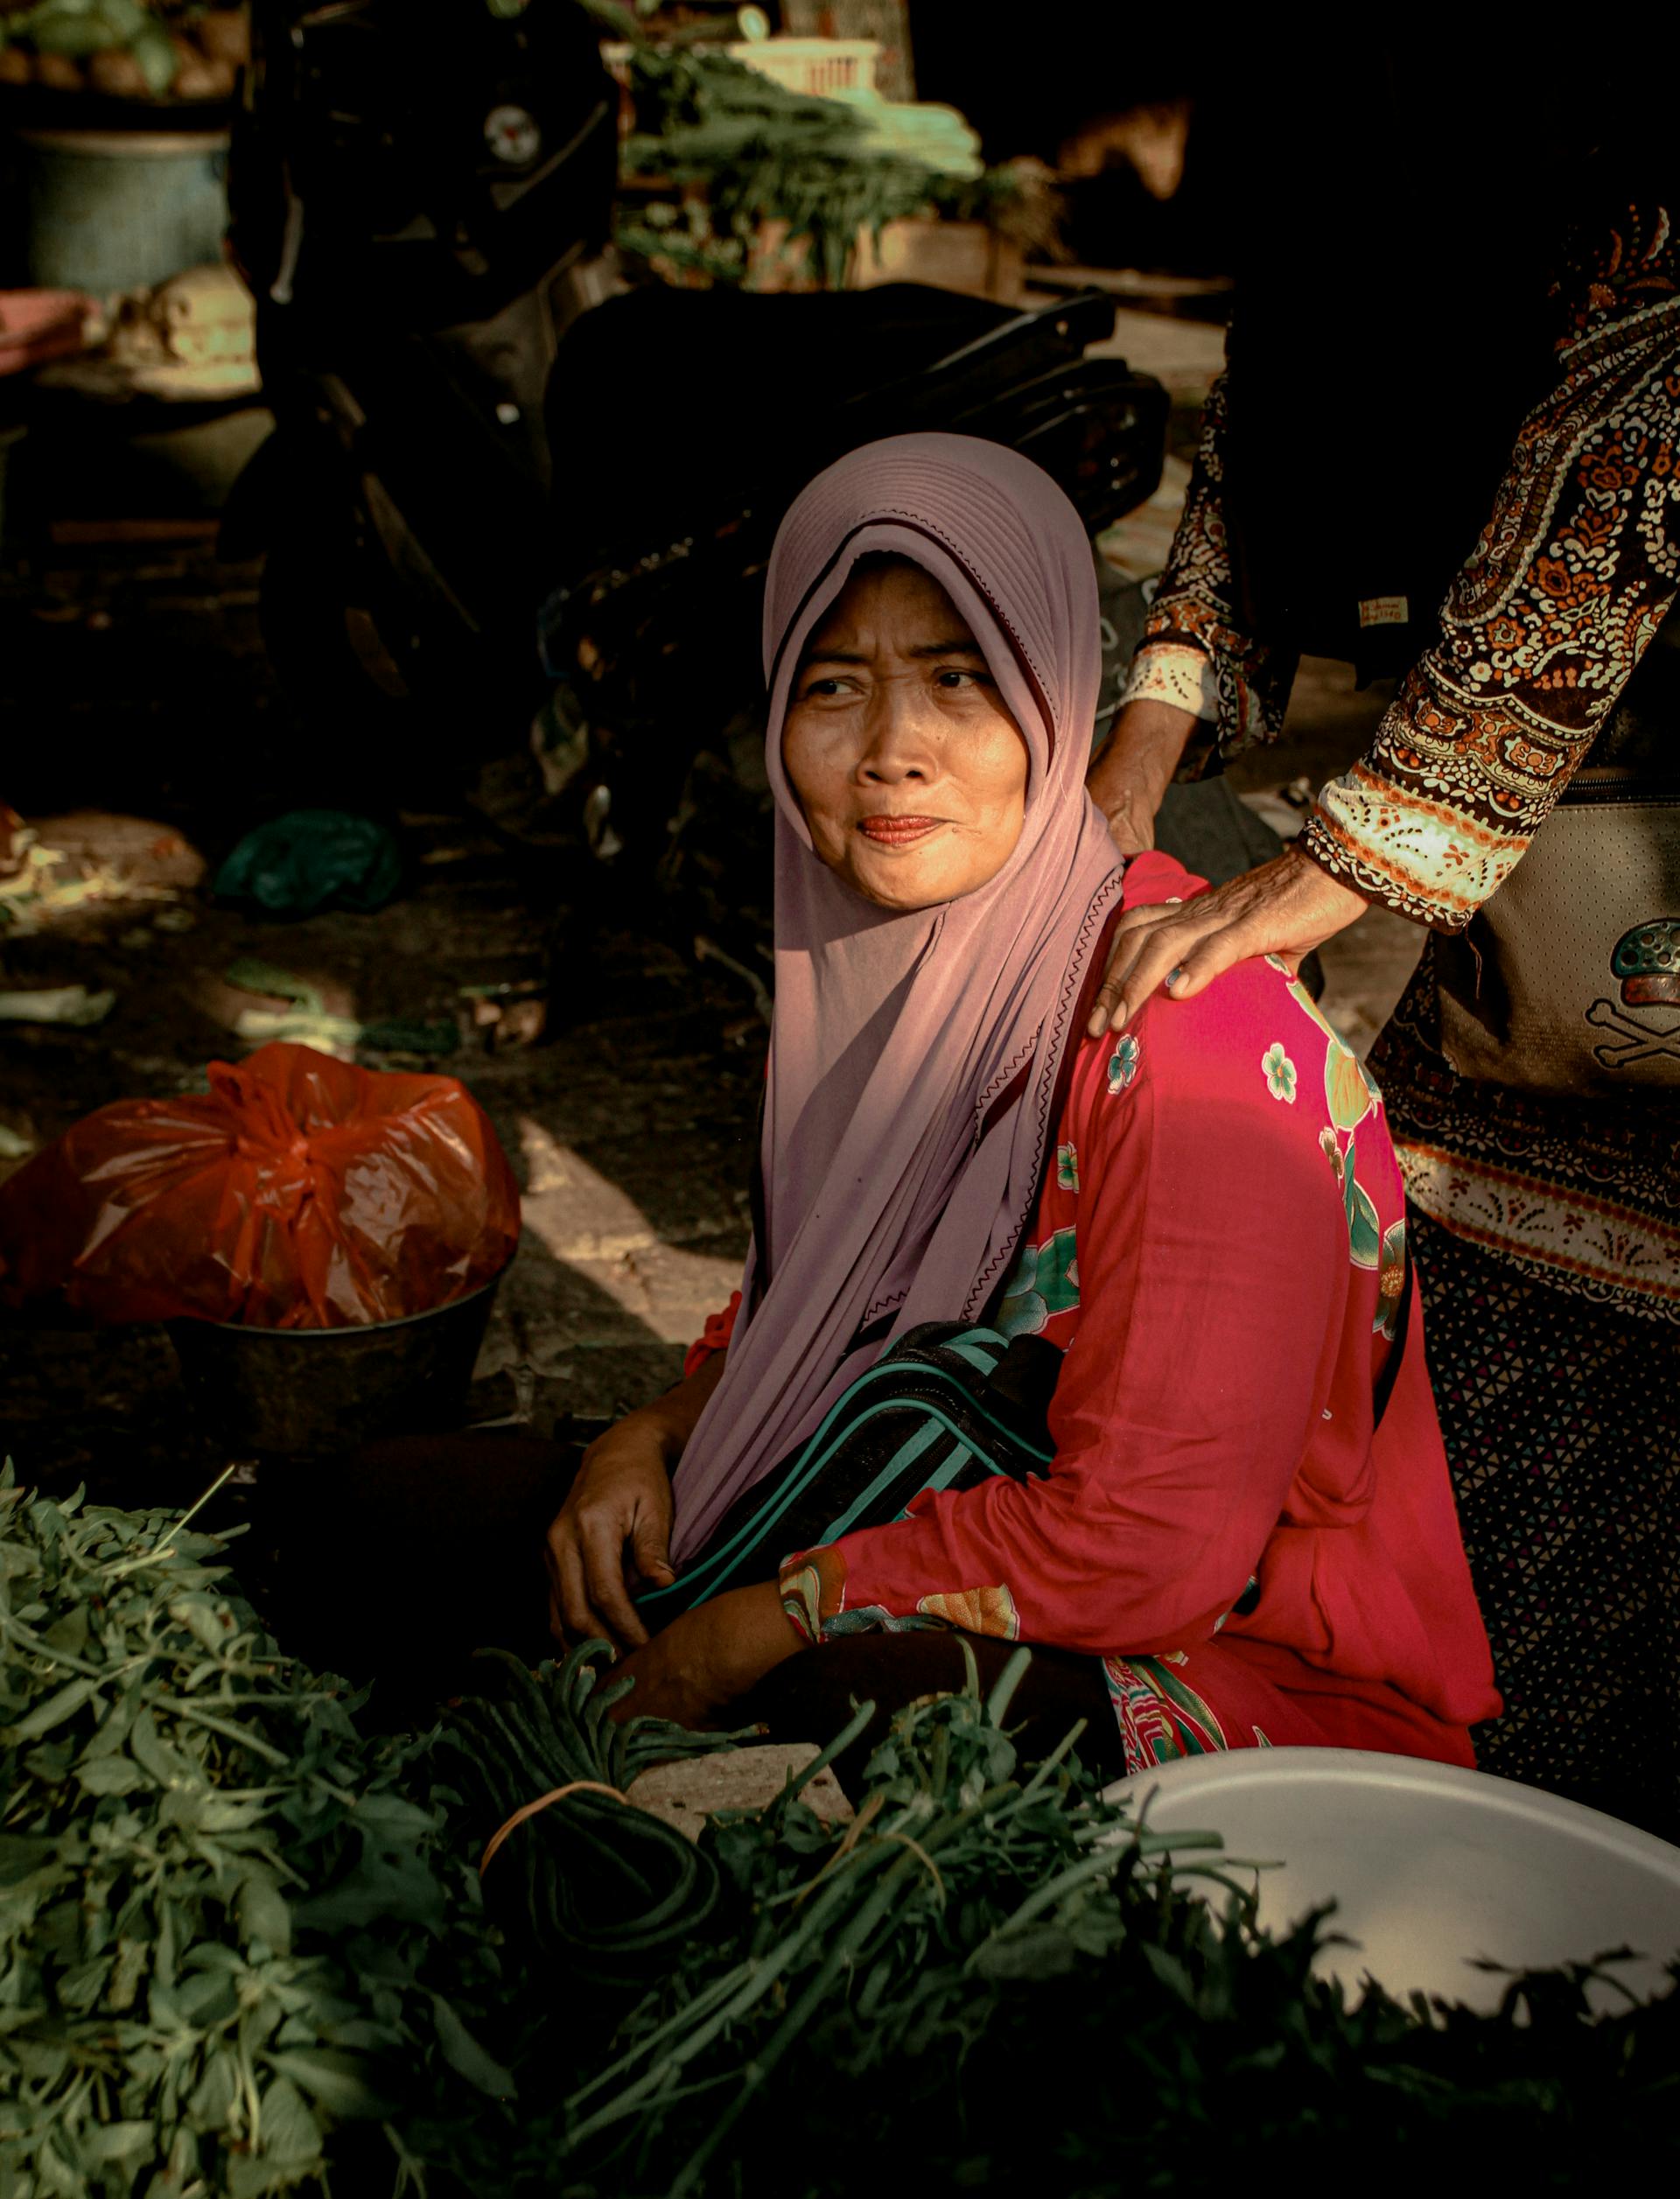 Foto oleh Ida Rizkha: https://www.pexels.com/id-id/foto/wanita-mengenakan-jilbab-merah-muda-di-pasar-menjual-sayuran-mendapat-pijat-bahu-3012422/